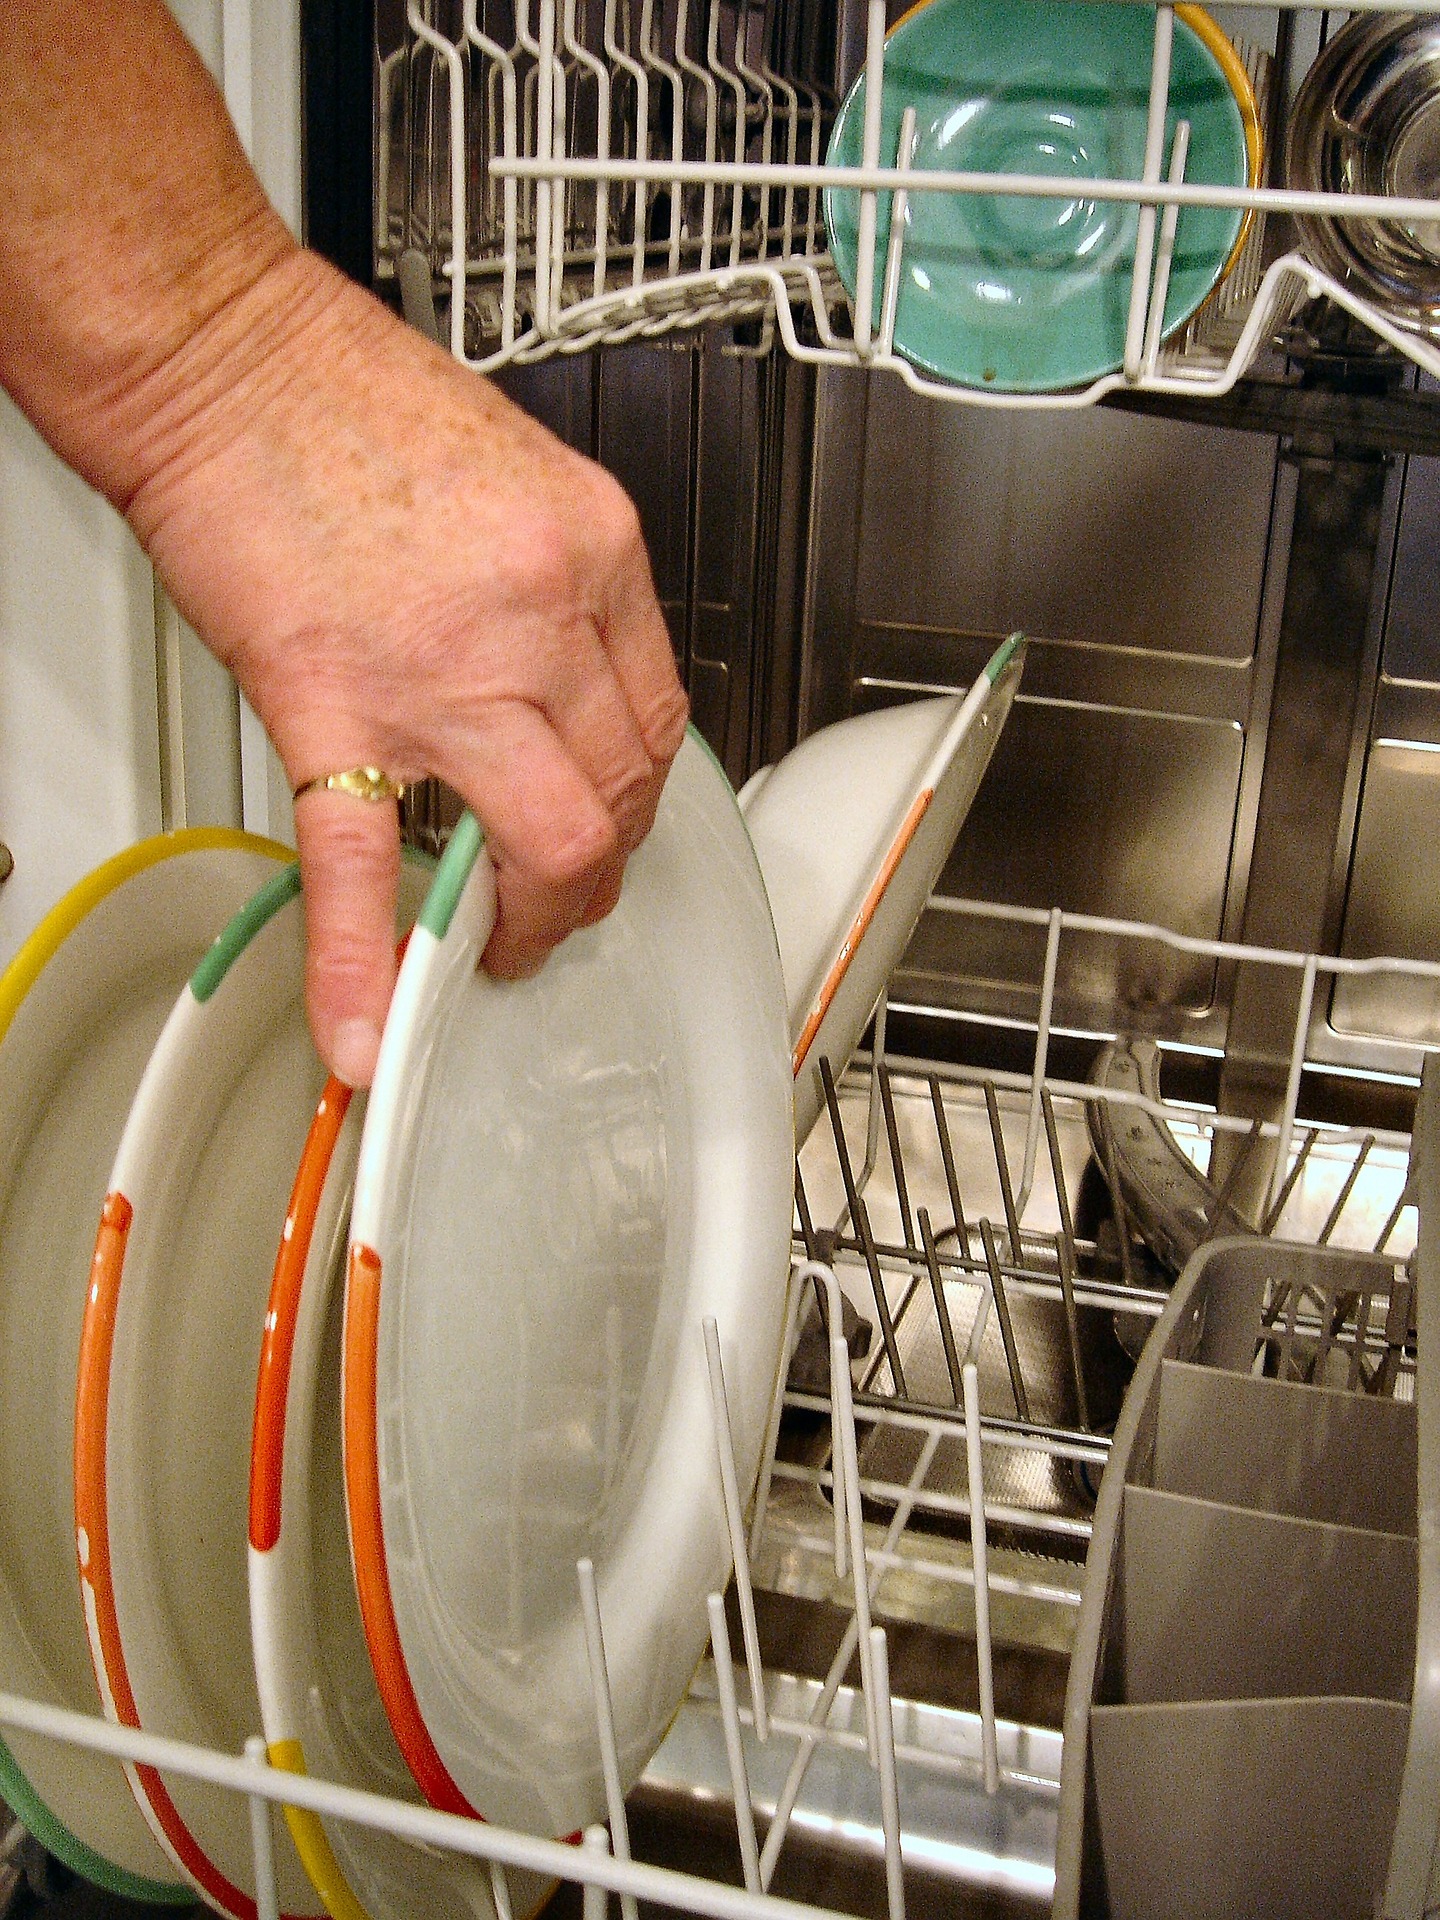 Íme a lista mit szabad és mit nem ajánlott a mosogatógépbe tenni - Blikk